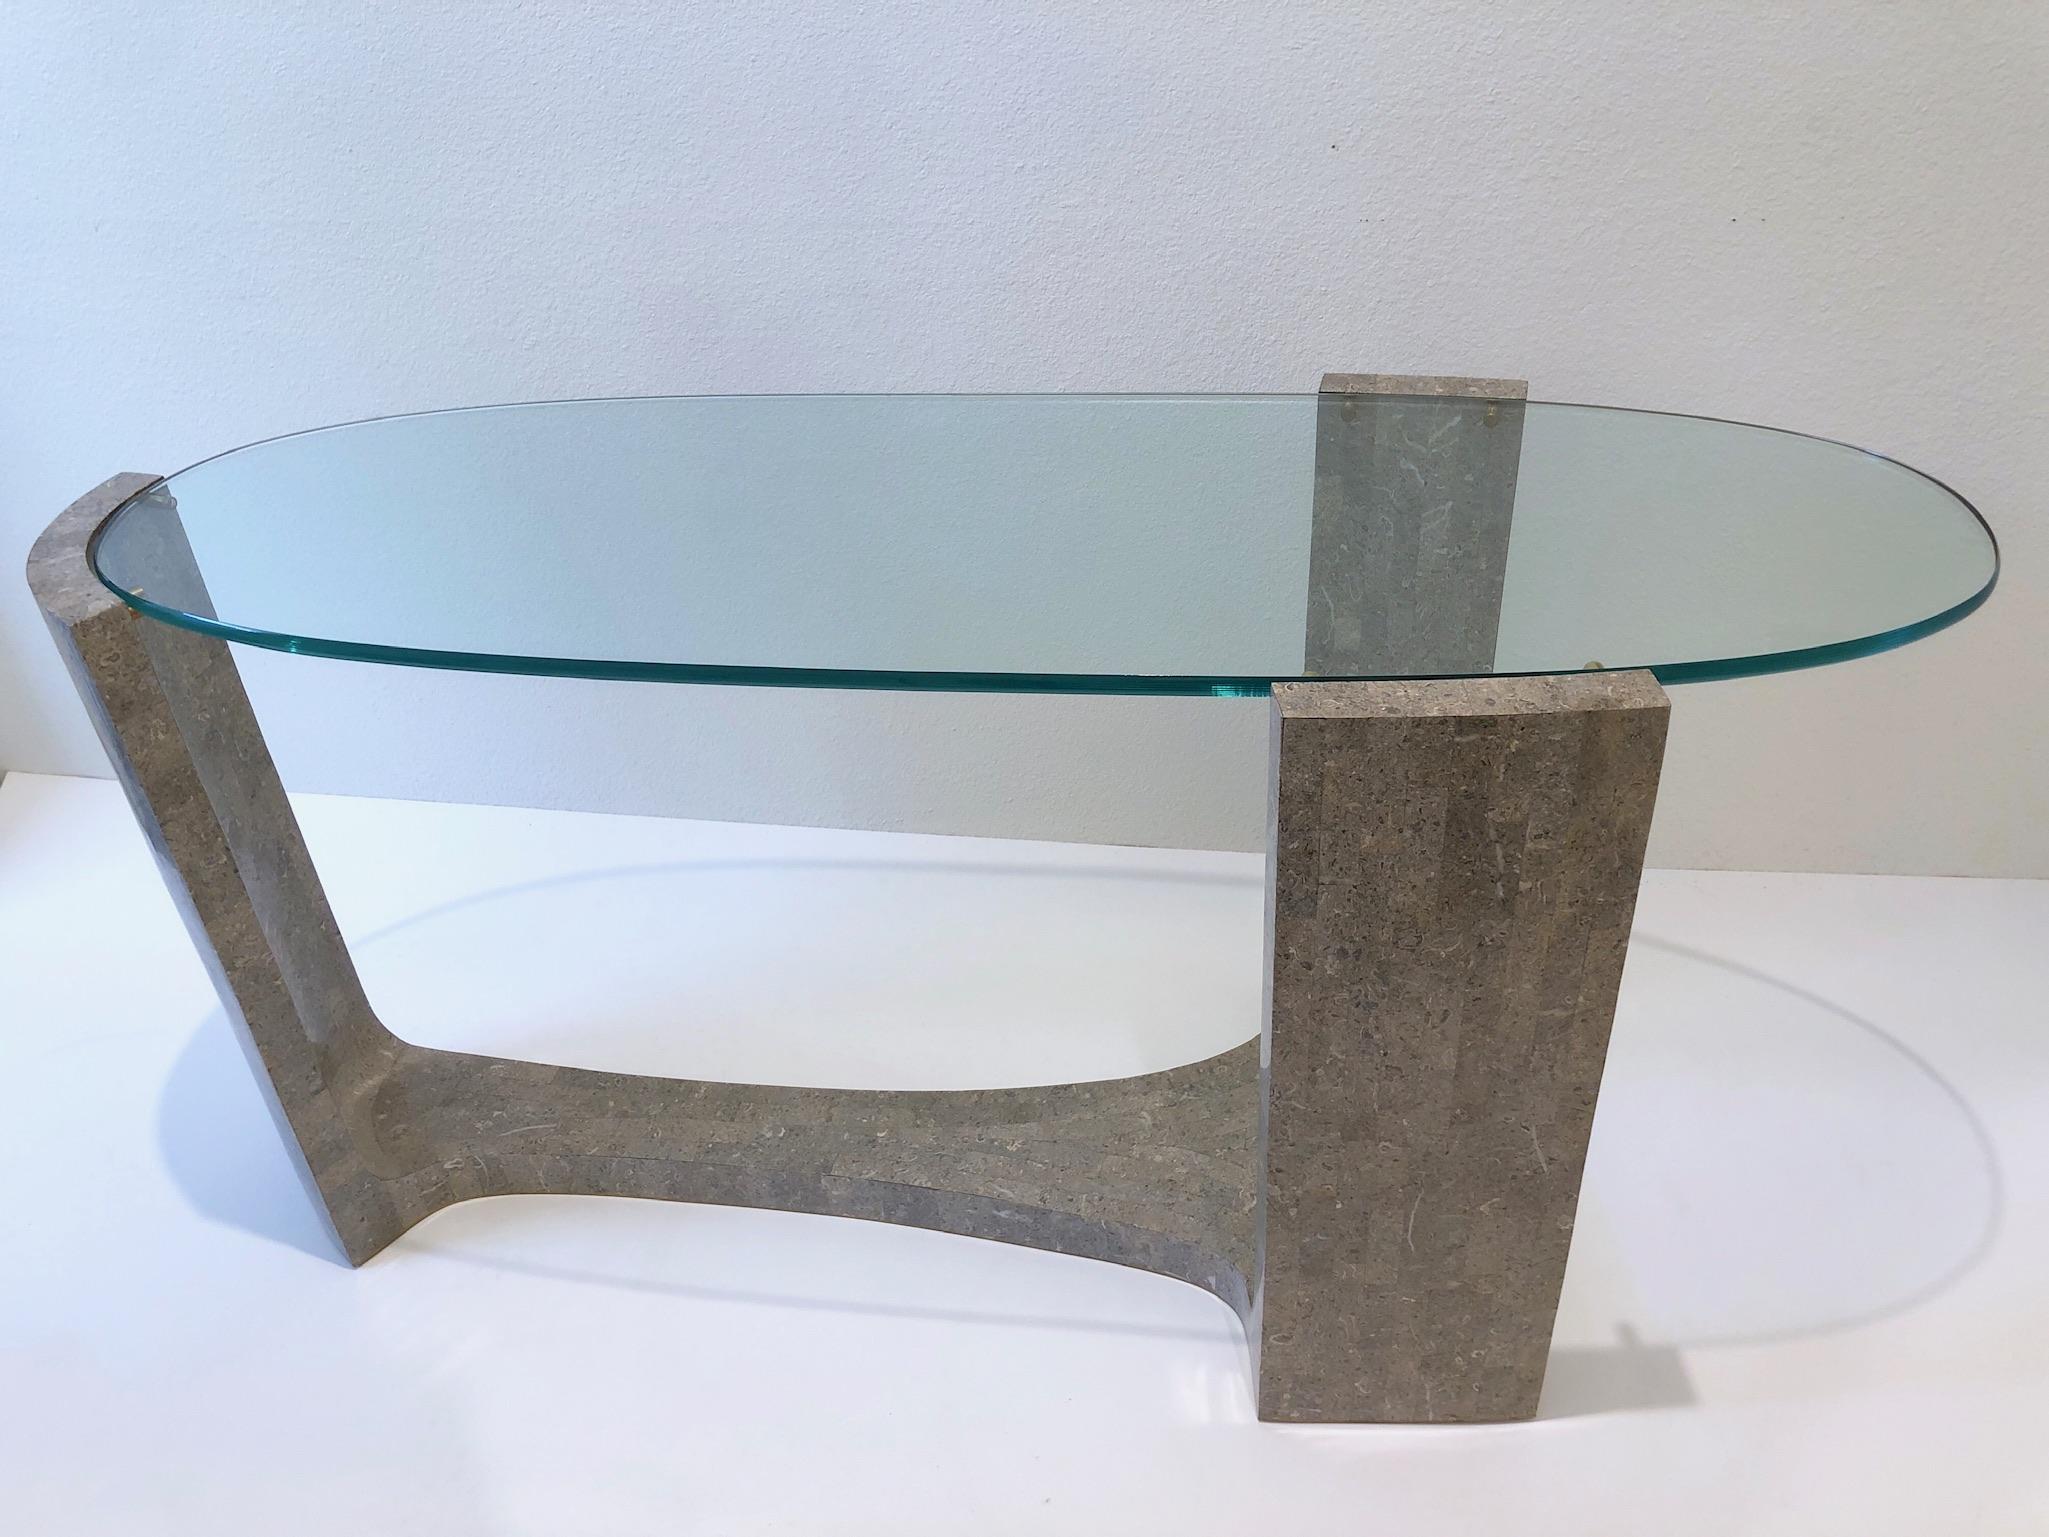 table console sculpturale des années 1980 par Maitland Smith.
Construit en bois recouvert de marbre gris tessellé, plateau ovale en verre et détails en laiton.
Mesures : 28.25